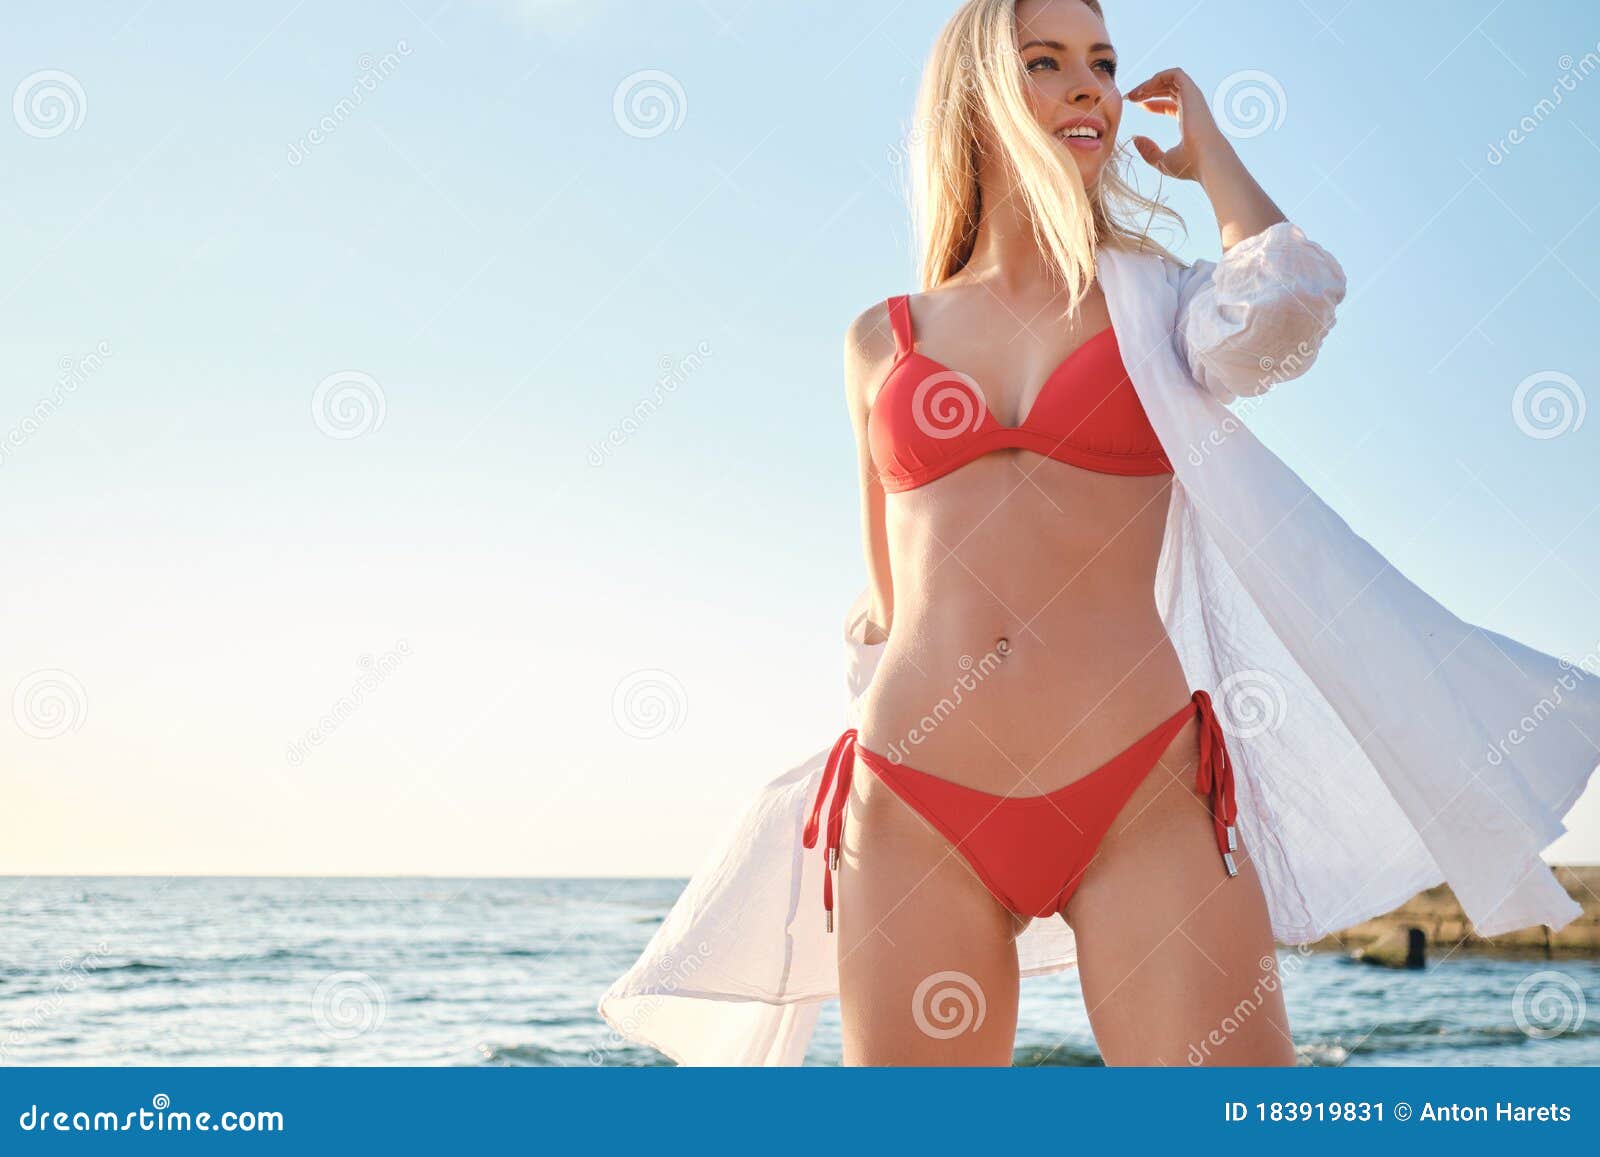 Joven Y Hermosa Rubia Con Traje De Baño Y Camisa Blanca Que Mira Soñadoramente a Un Lado De La Playa Con El Mar En Segundo P Imagen de archivo - Imagen